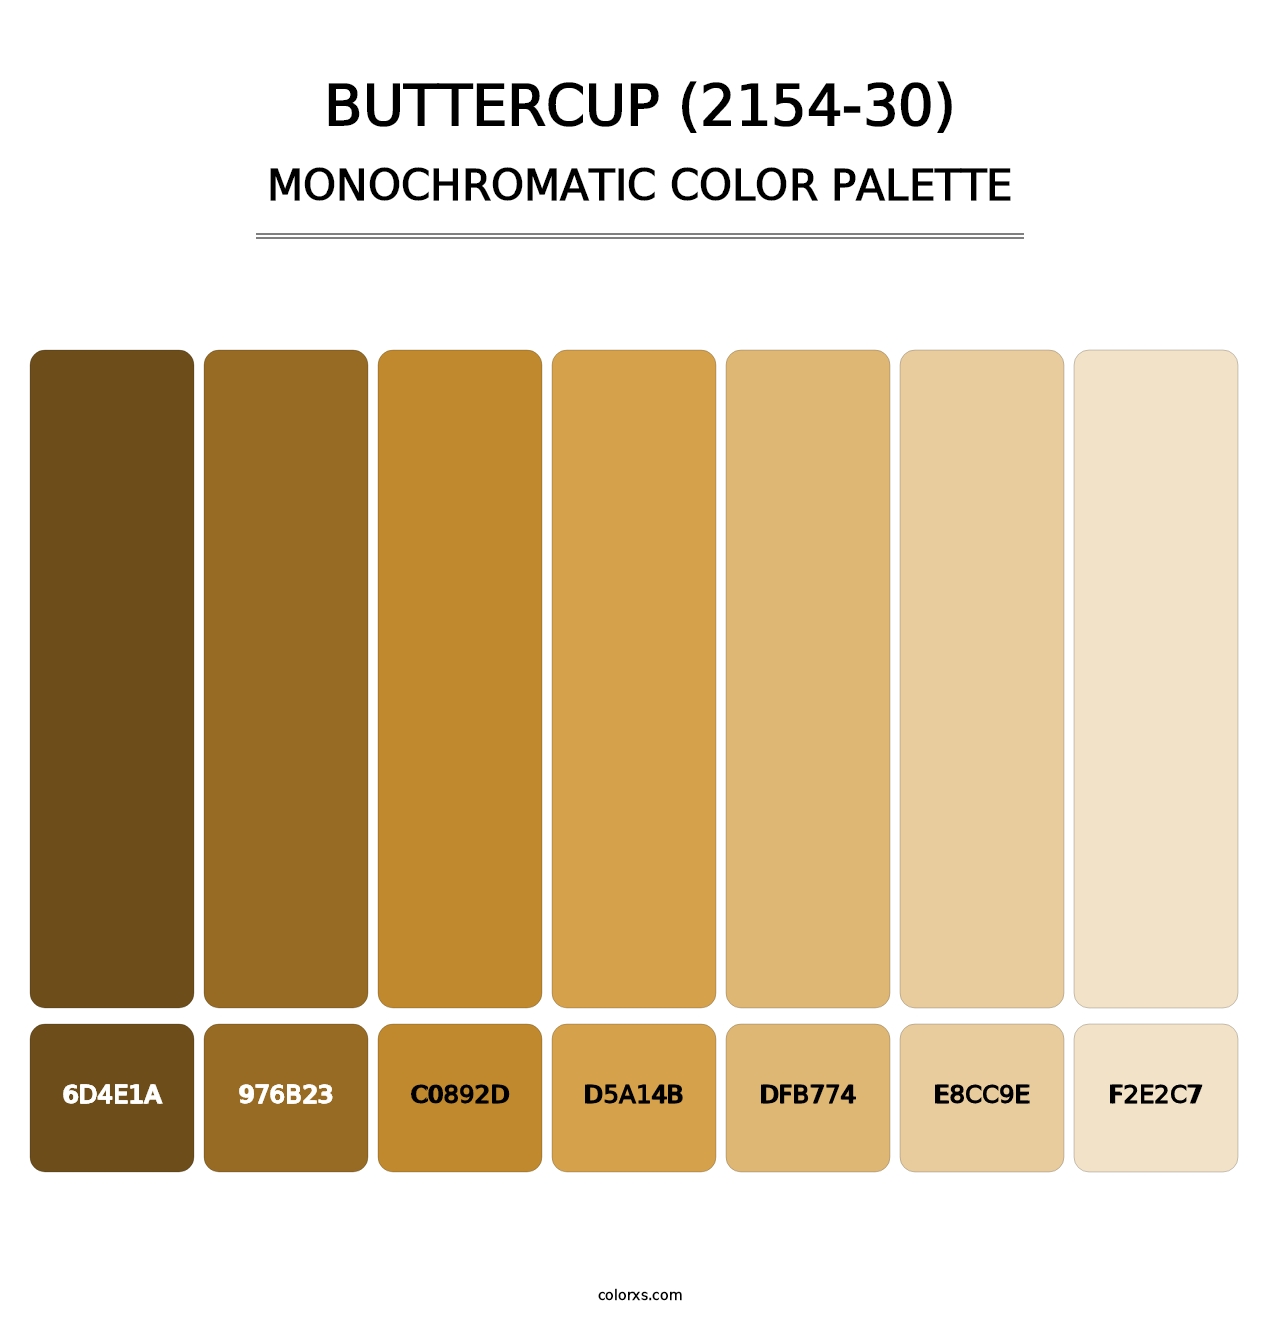 Buttercup (2154-30) - Monochromatic Color Palette